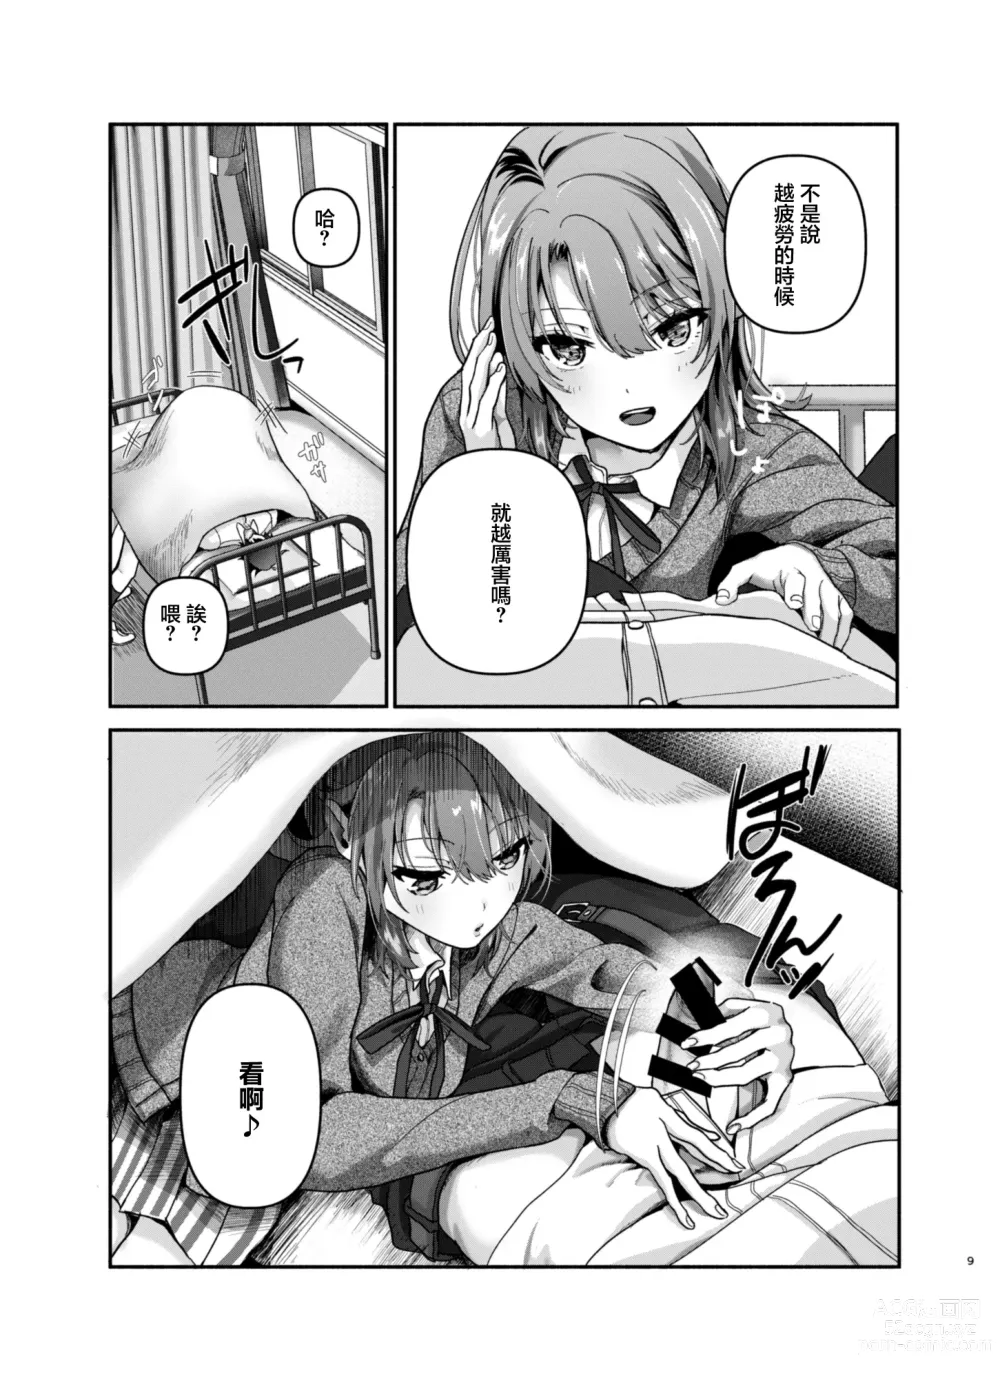 Page 8 of doujinshi 需要充電補充一下元氣嗎?